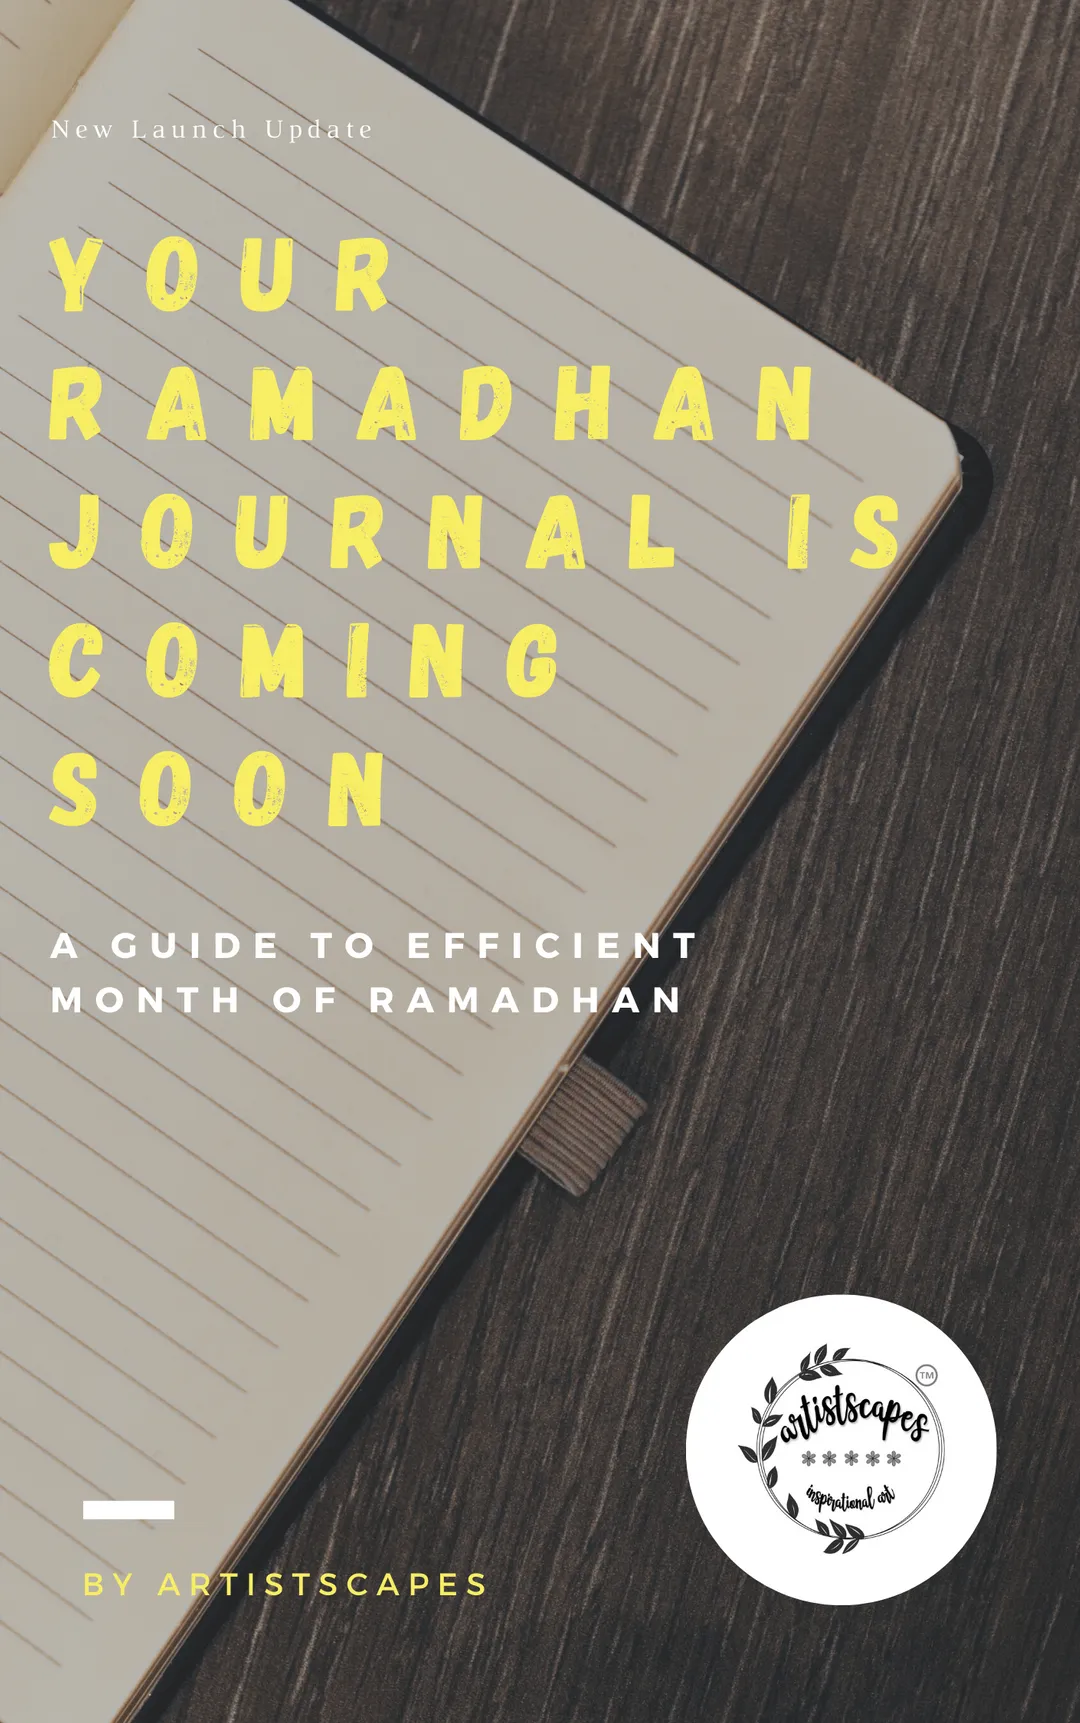 Ramadhan Journal coming soon...